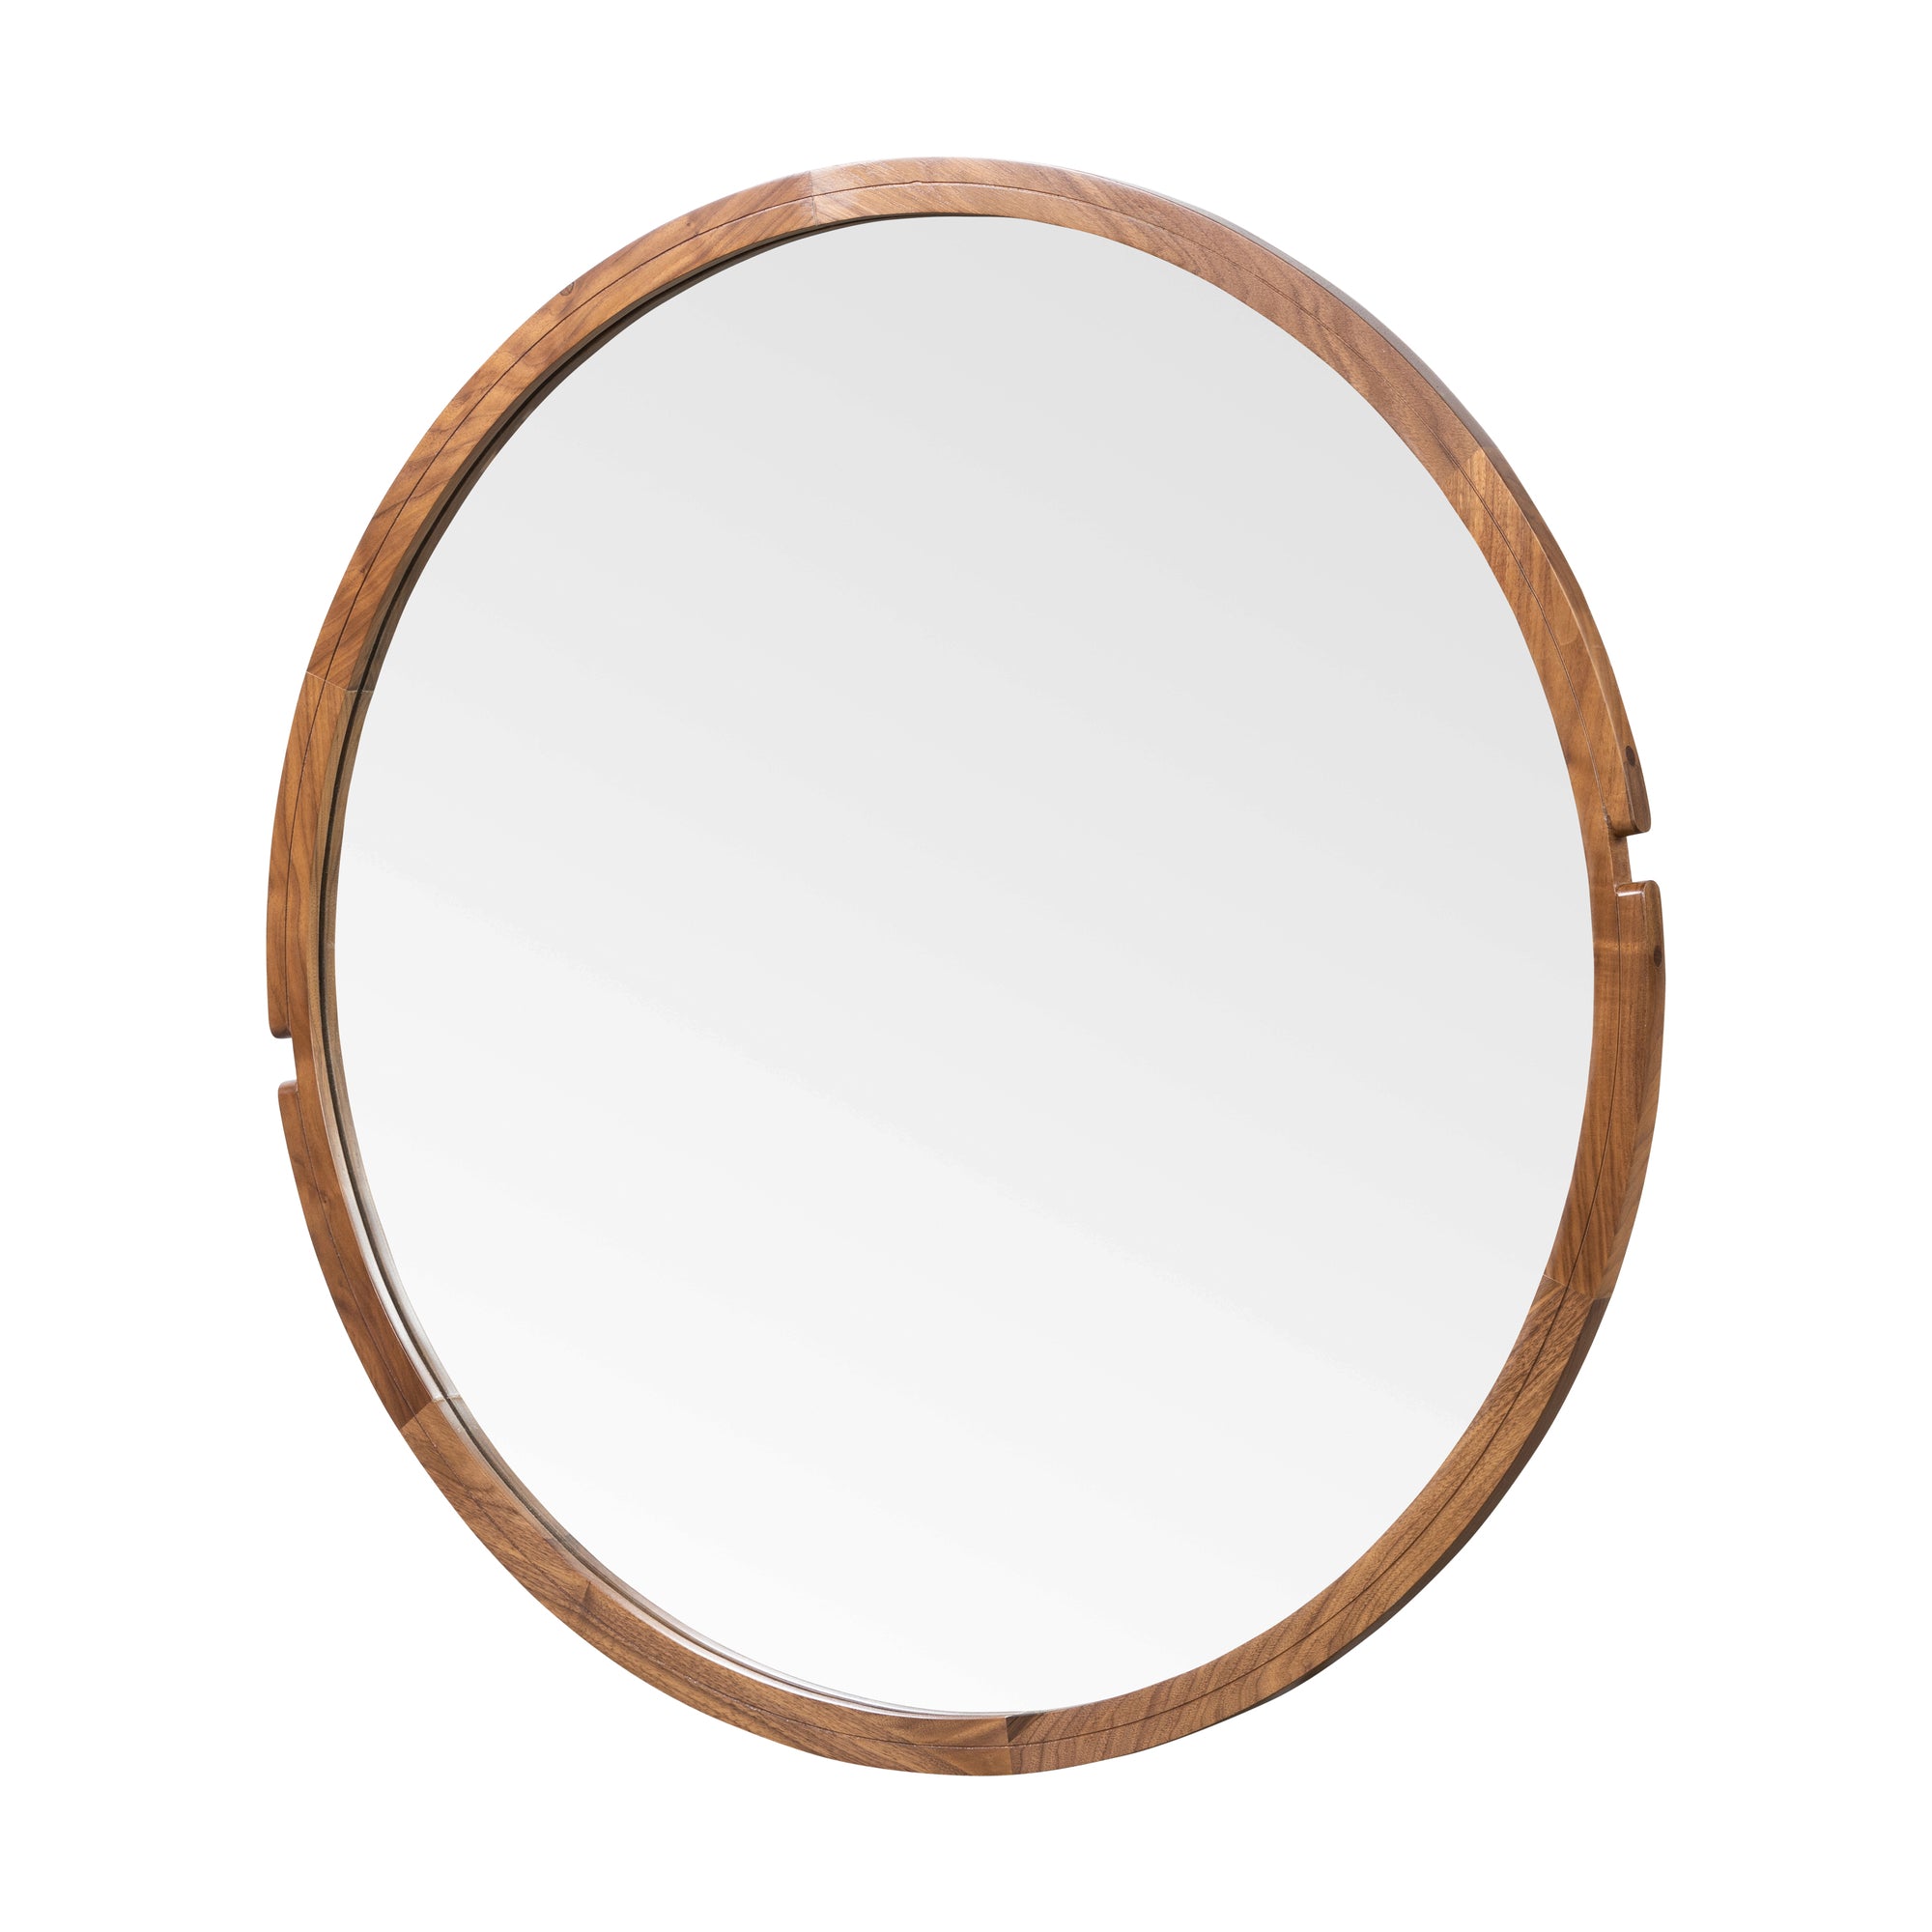 Moore Round Wooden Mirror